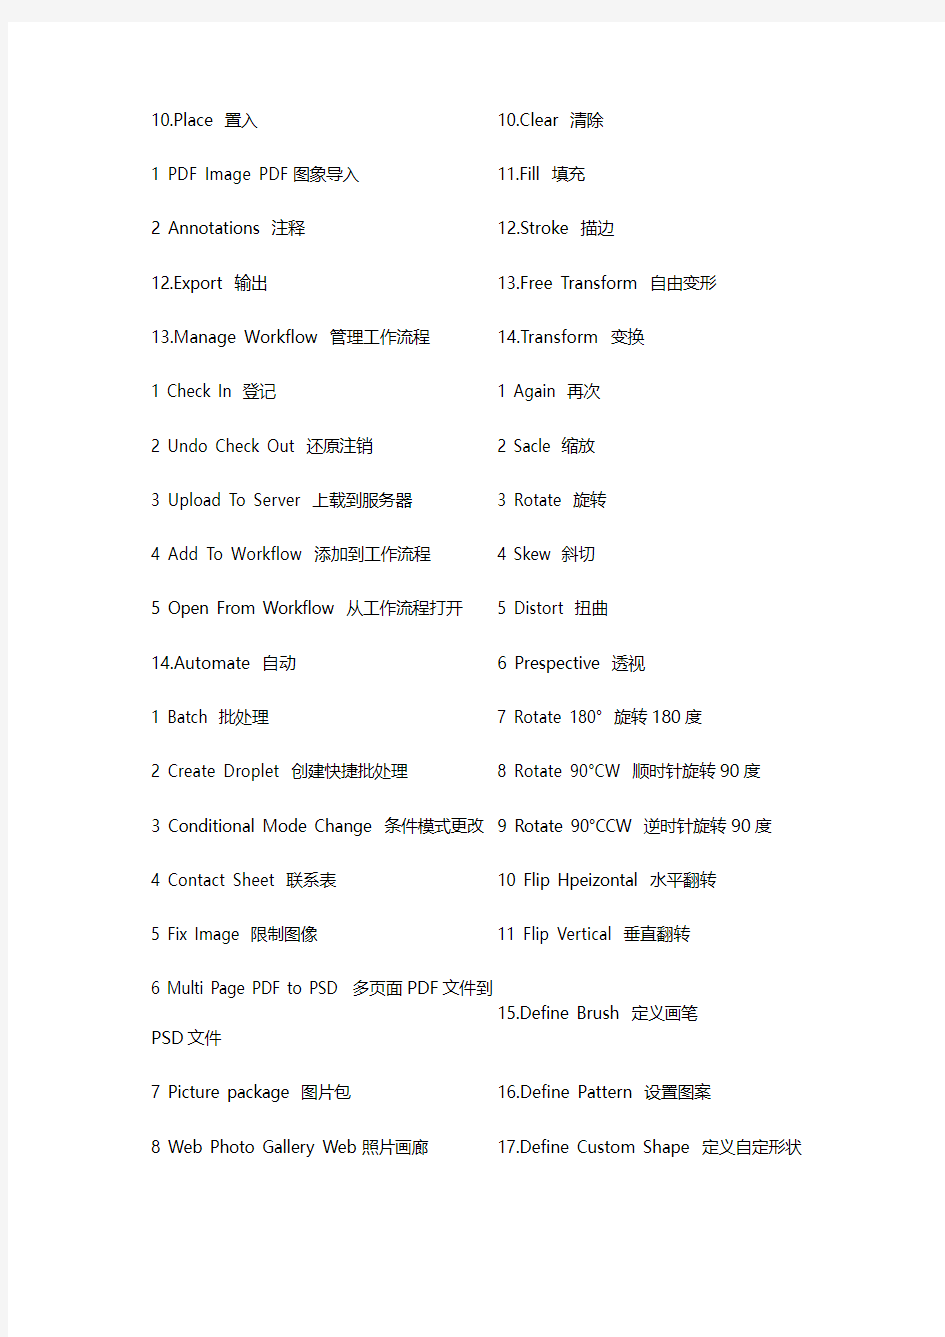 中英文菜单对照表